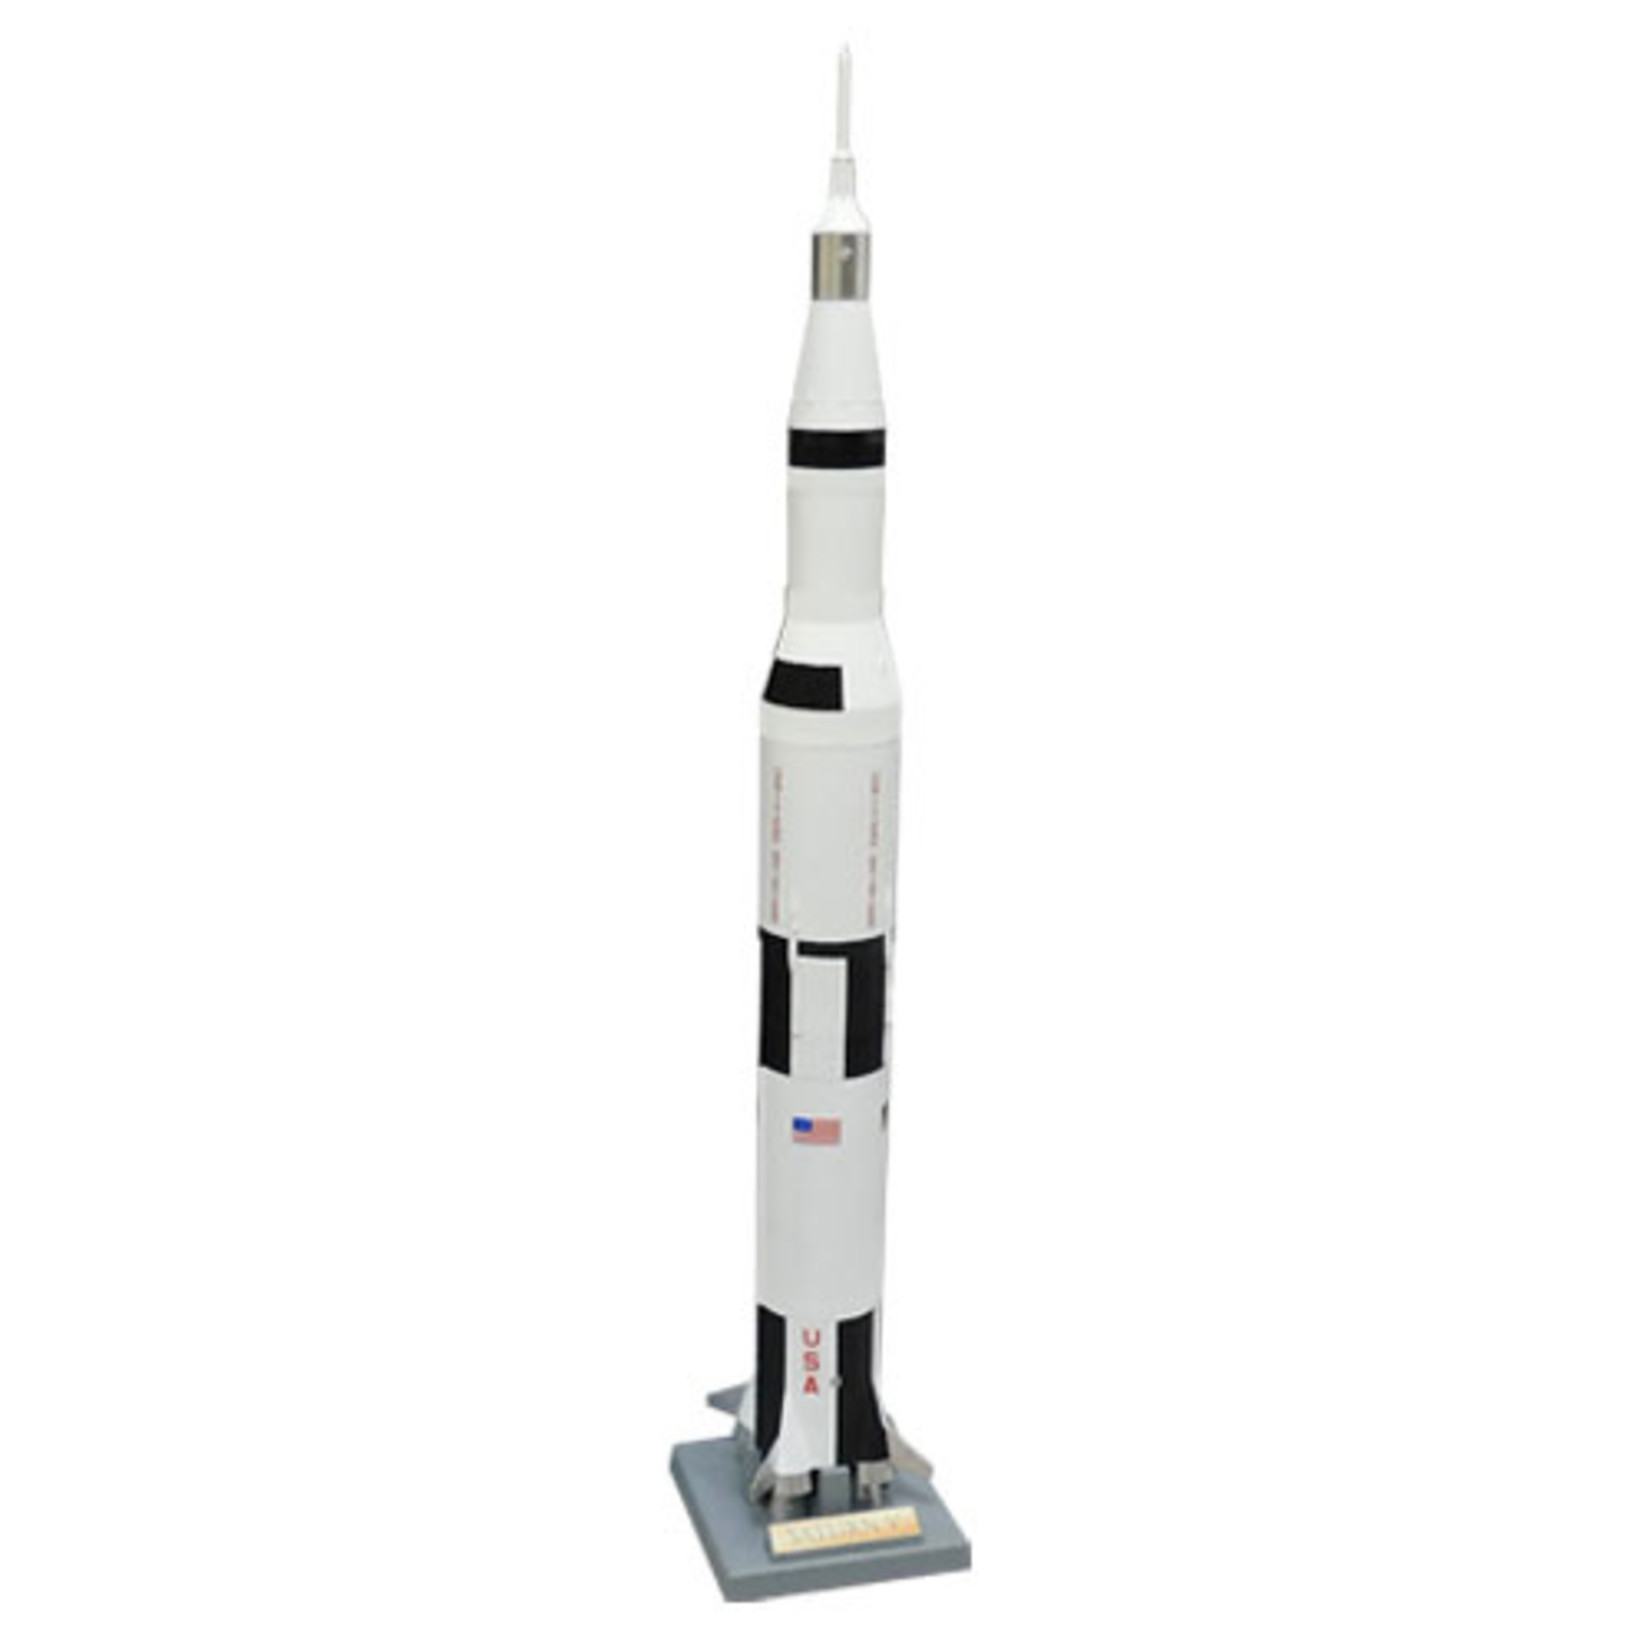 Estes Rockets EST2160  Saturn V 1:200 Scale